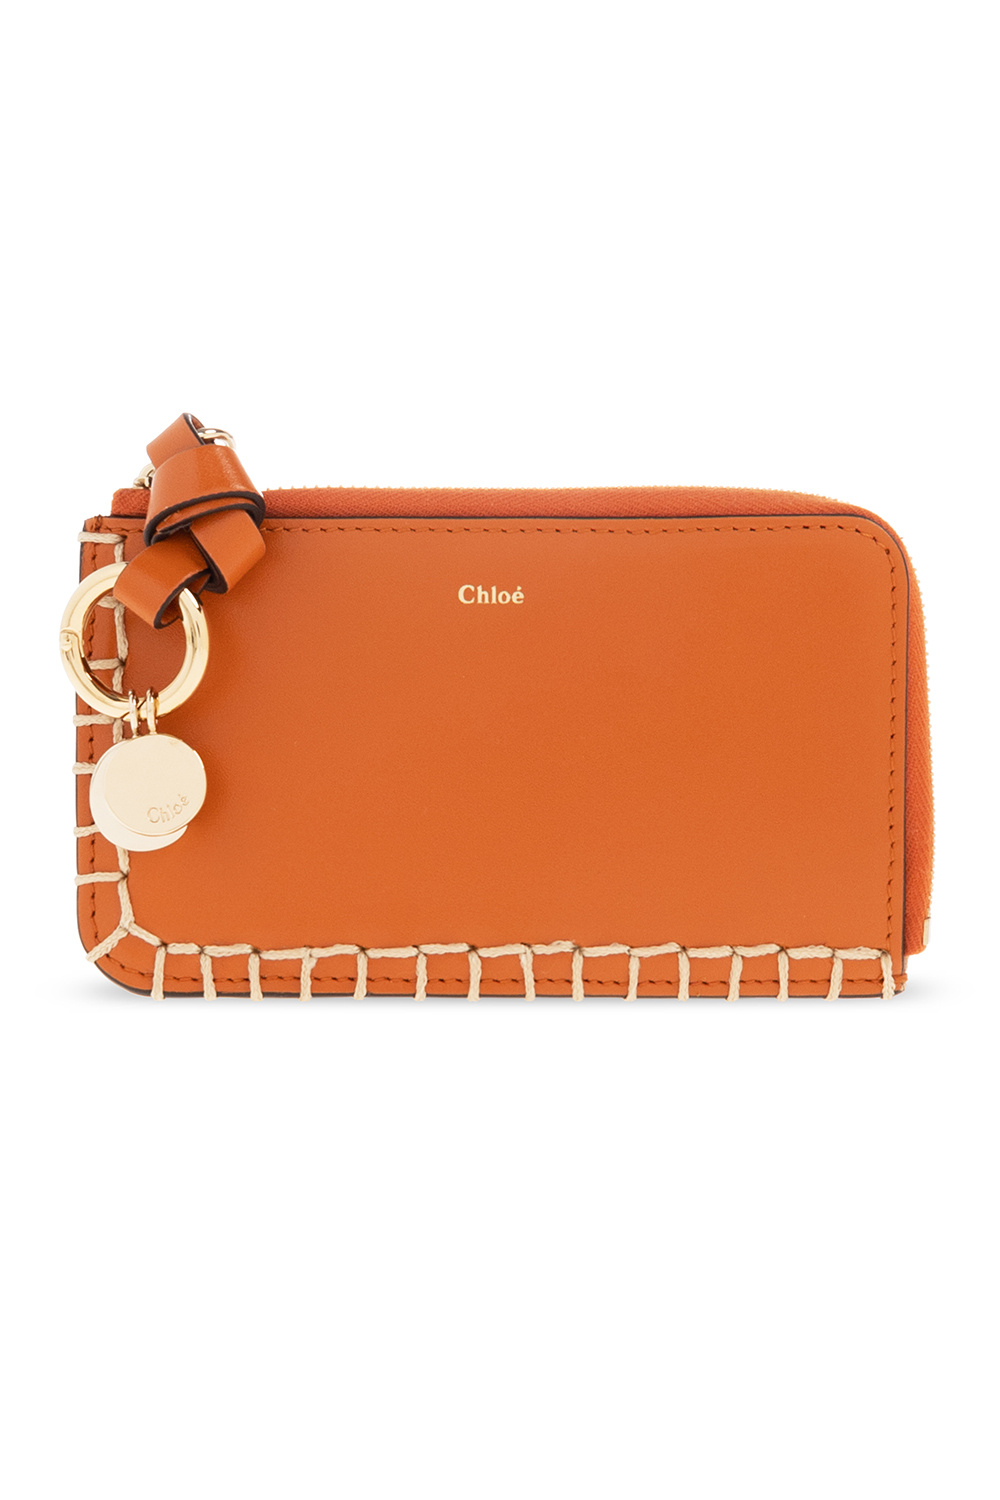 Chloé ‘Alphabet’ leather card holder